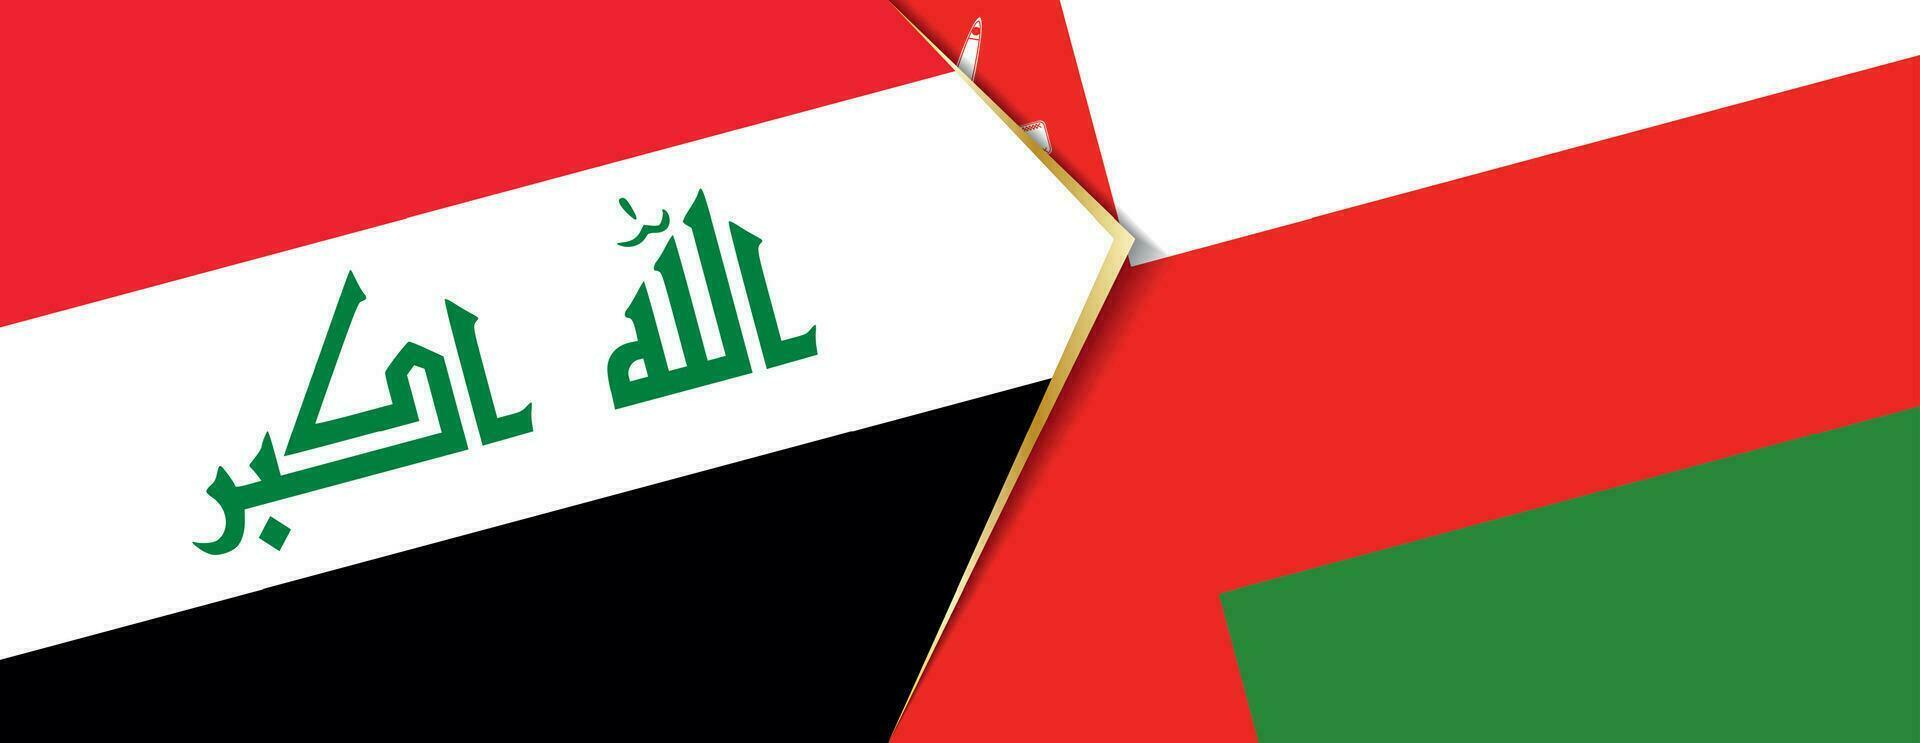 Irak und Oman Flaggen, zwei Vektor Flaggen.